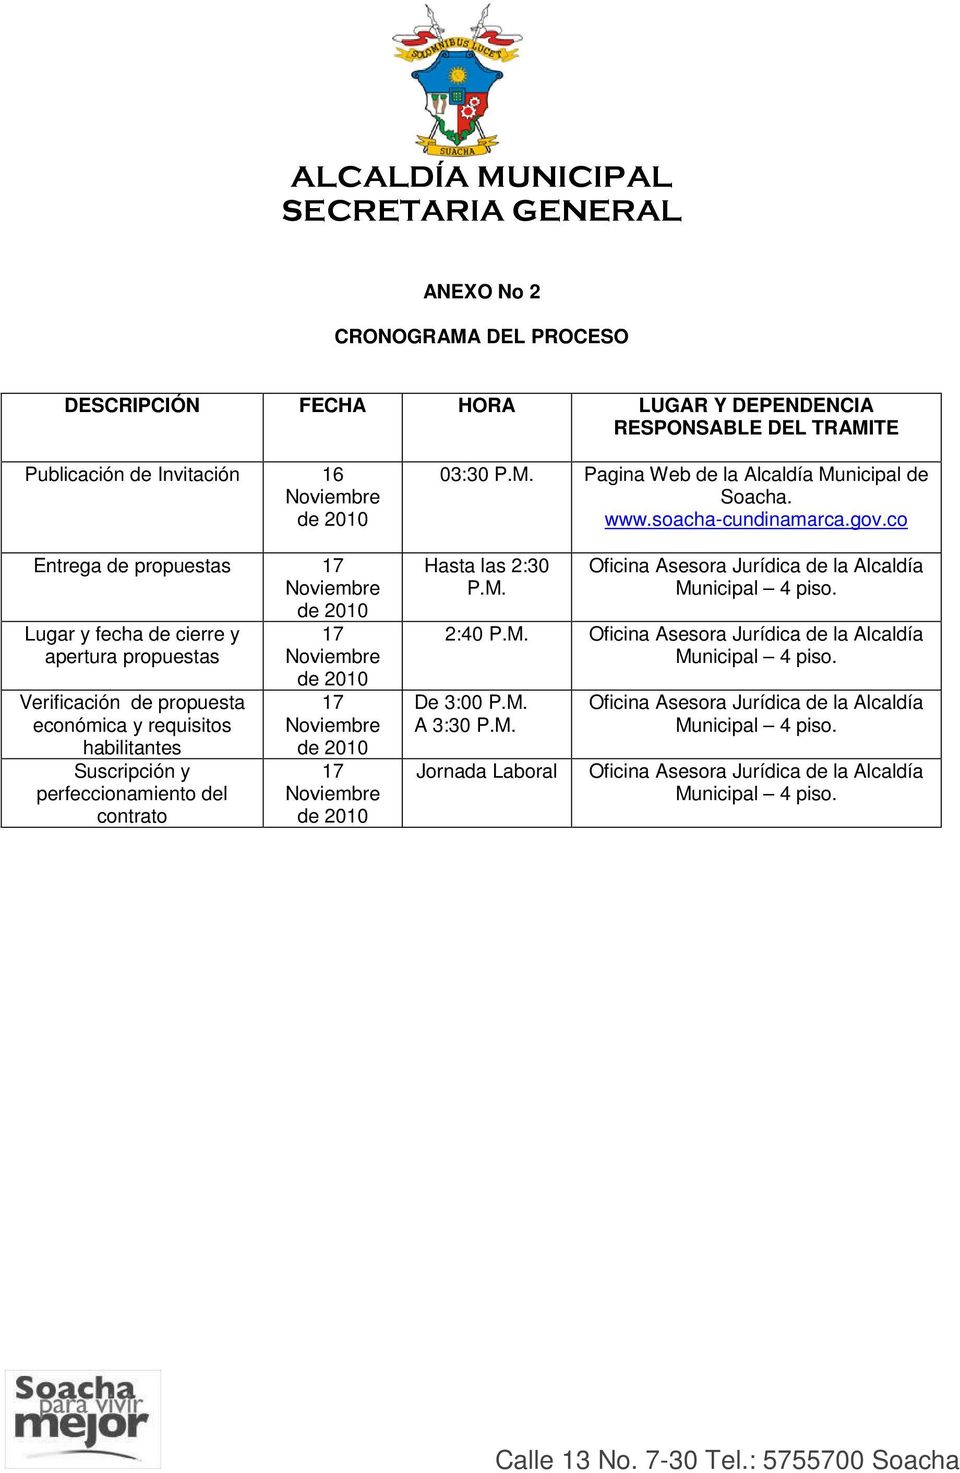 Noviembre de 2010 03:30 P.M. Pagina Web de la Alcaldía Municipal de Soacha. www.soacha-cundinamarca.gov.cocundinamarca.gov.co Hasta las 2:30 P.M. Oficina Asesora Jurídica de la Alcaldía Municipal 4 piso.